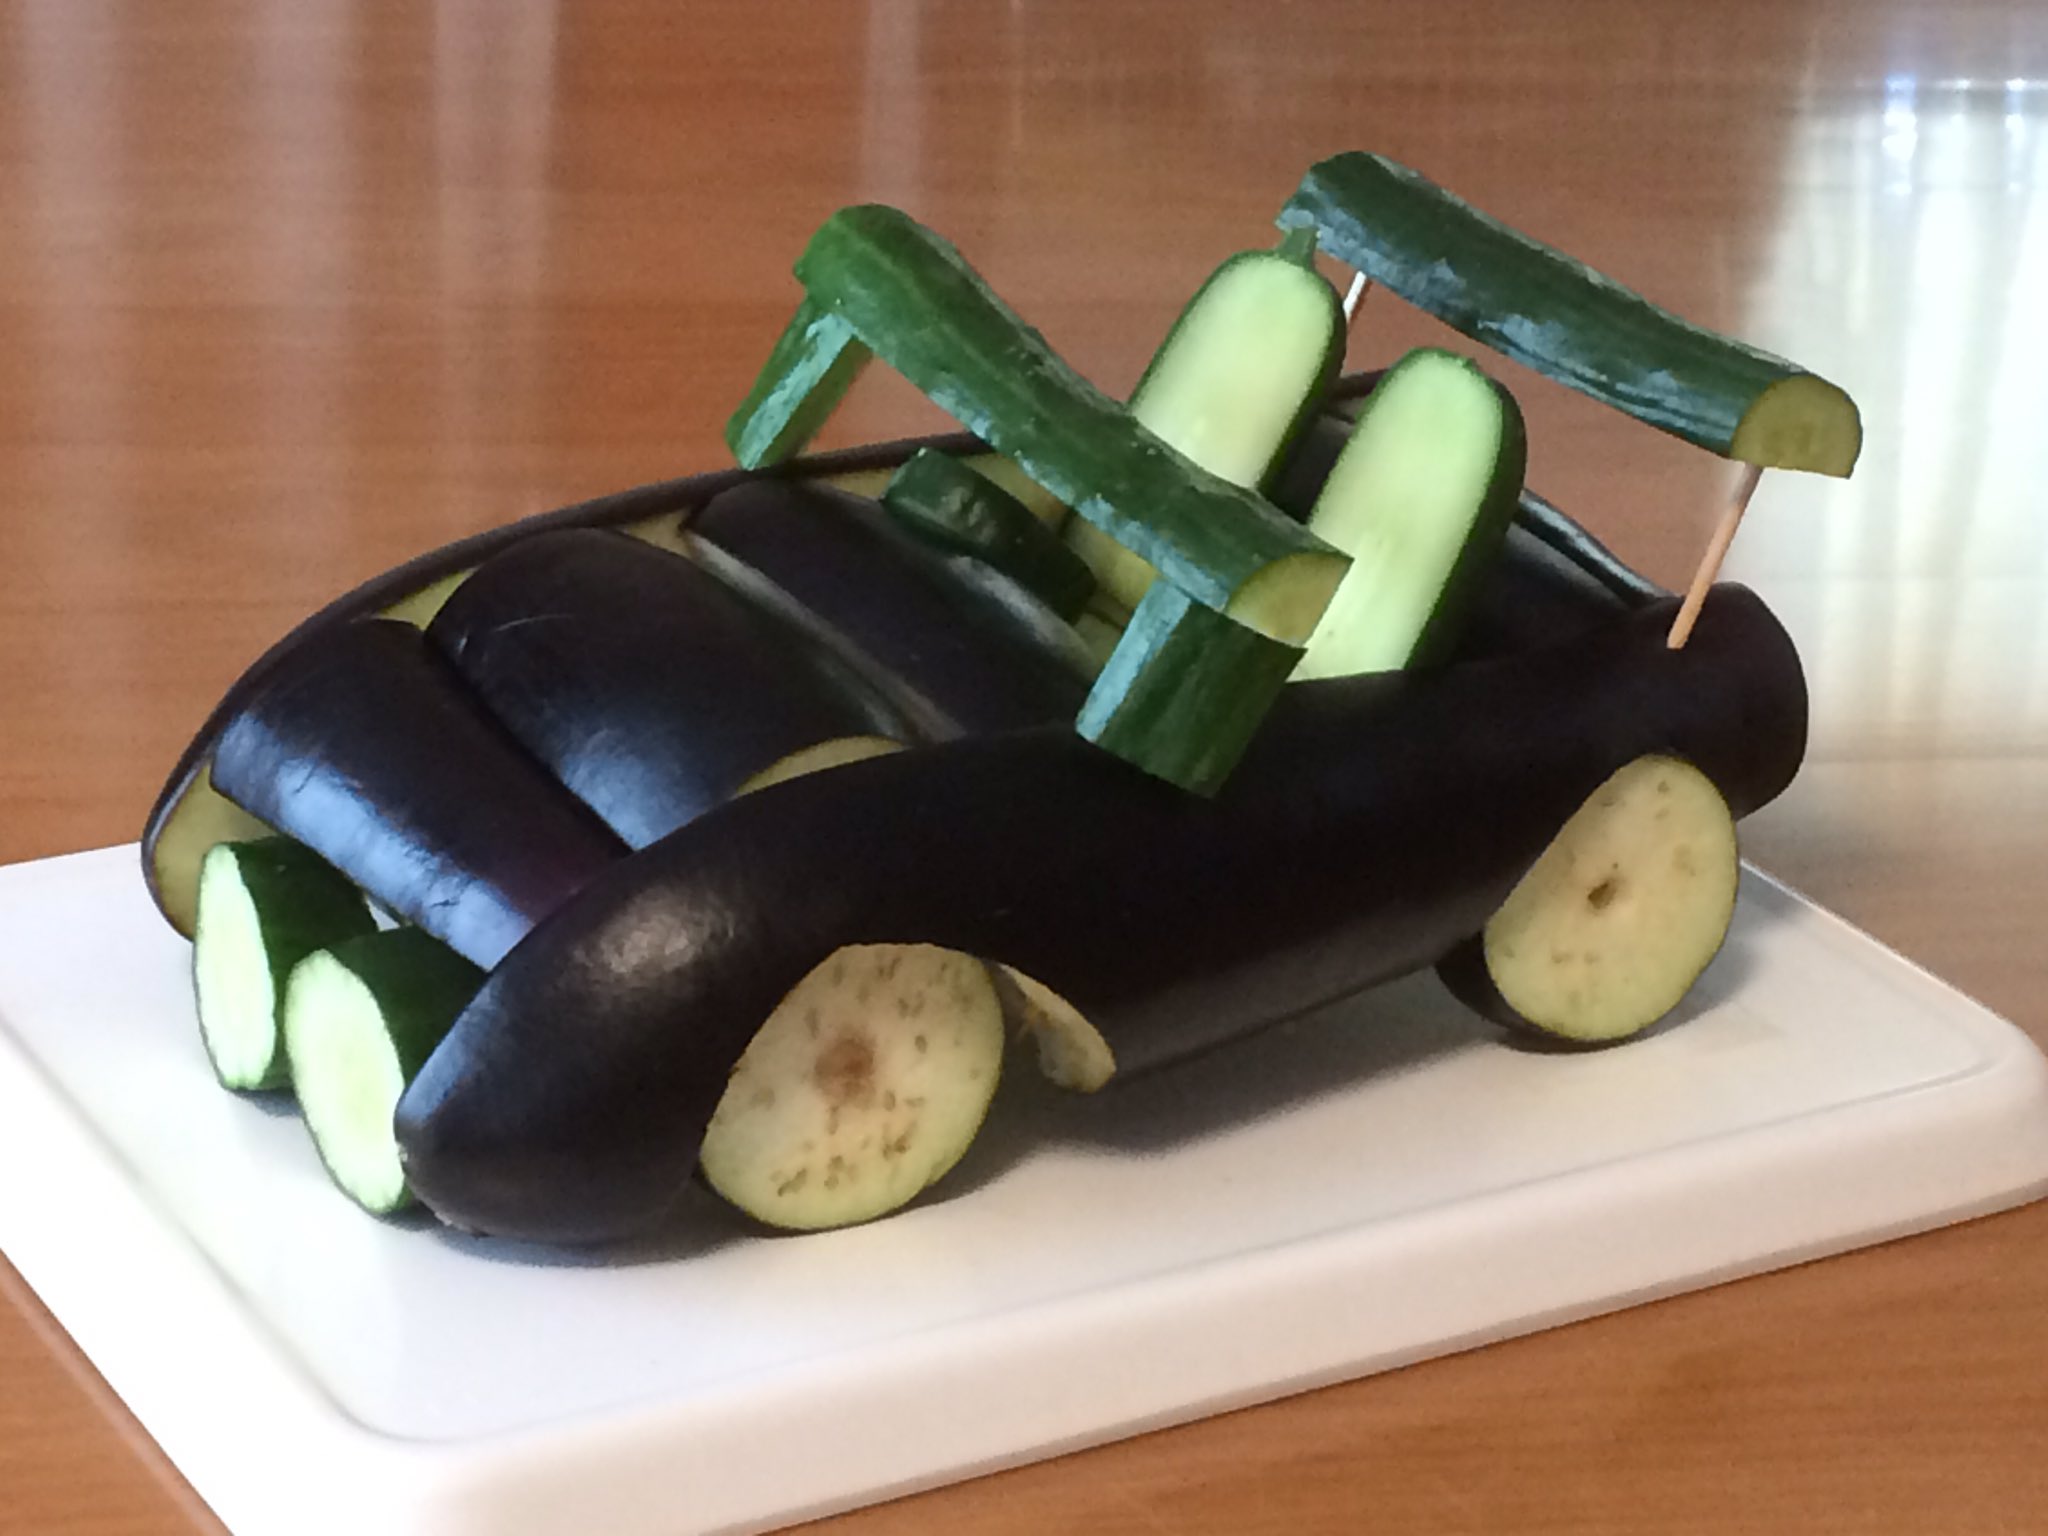 これは素晴らしい!お盆なので車好きだった父に野菜で車を作ってみた!